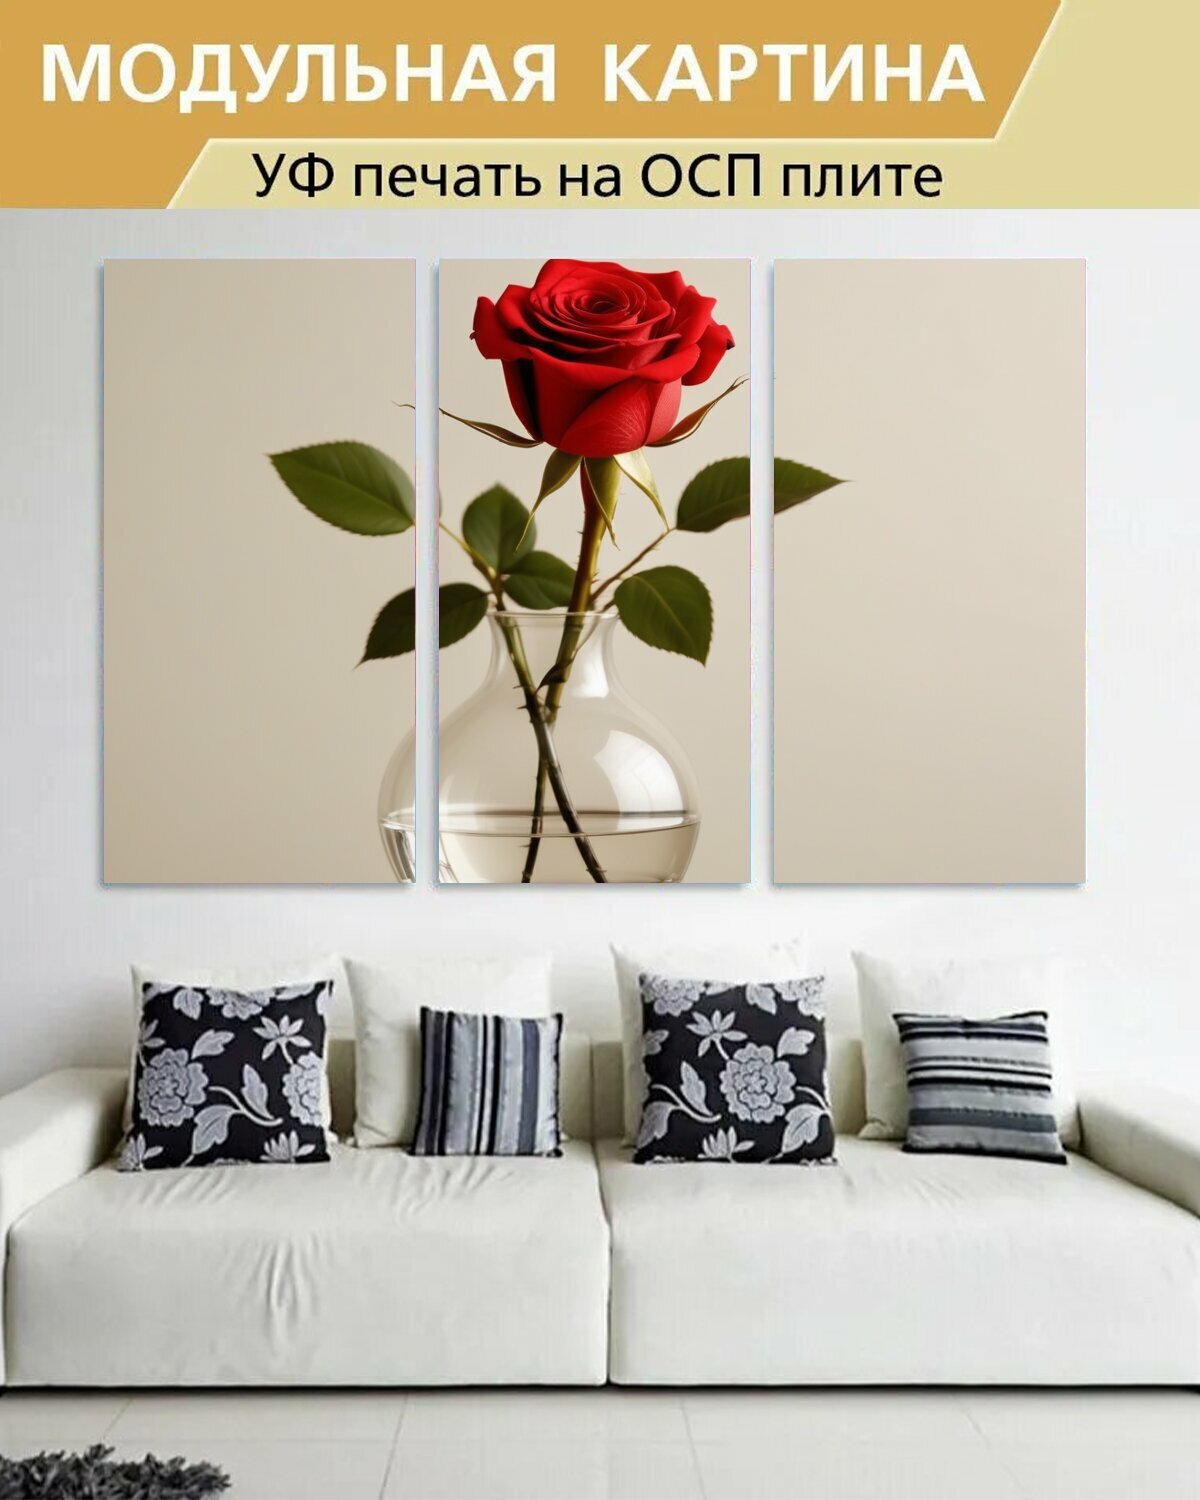 Модульная картина на ОСП любителям природы "Цветы, роза, красная в вазе" 188x125 см. 3 части для интерьера на стену